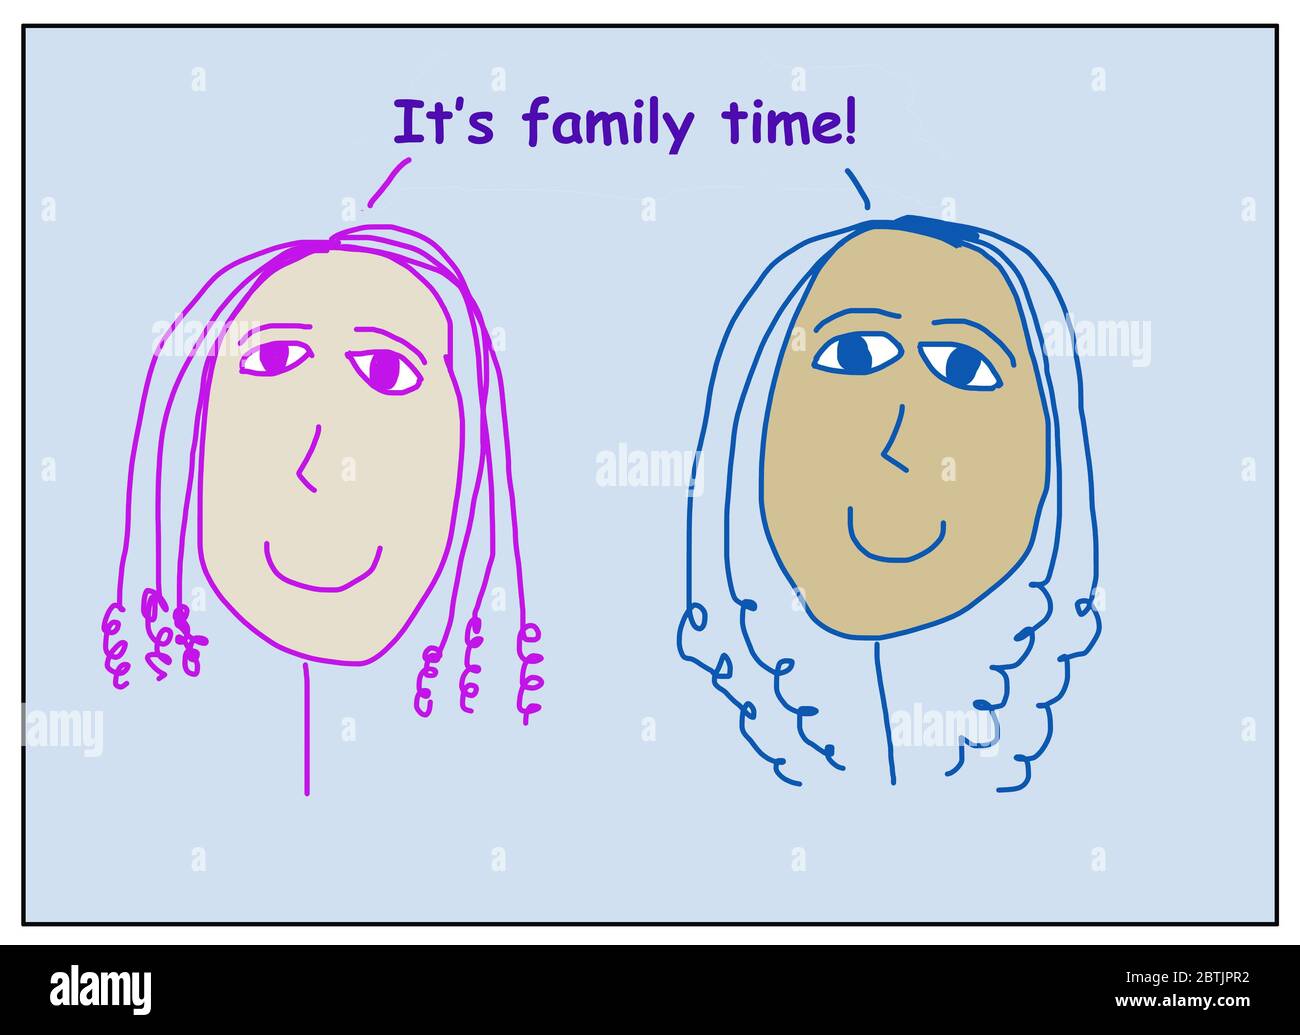 Dessin animé en couleur de deux femmes souriantes, belles et ethniquement diverses, déclarant que c'est le temps de la famille! Banque D'Images